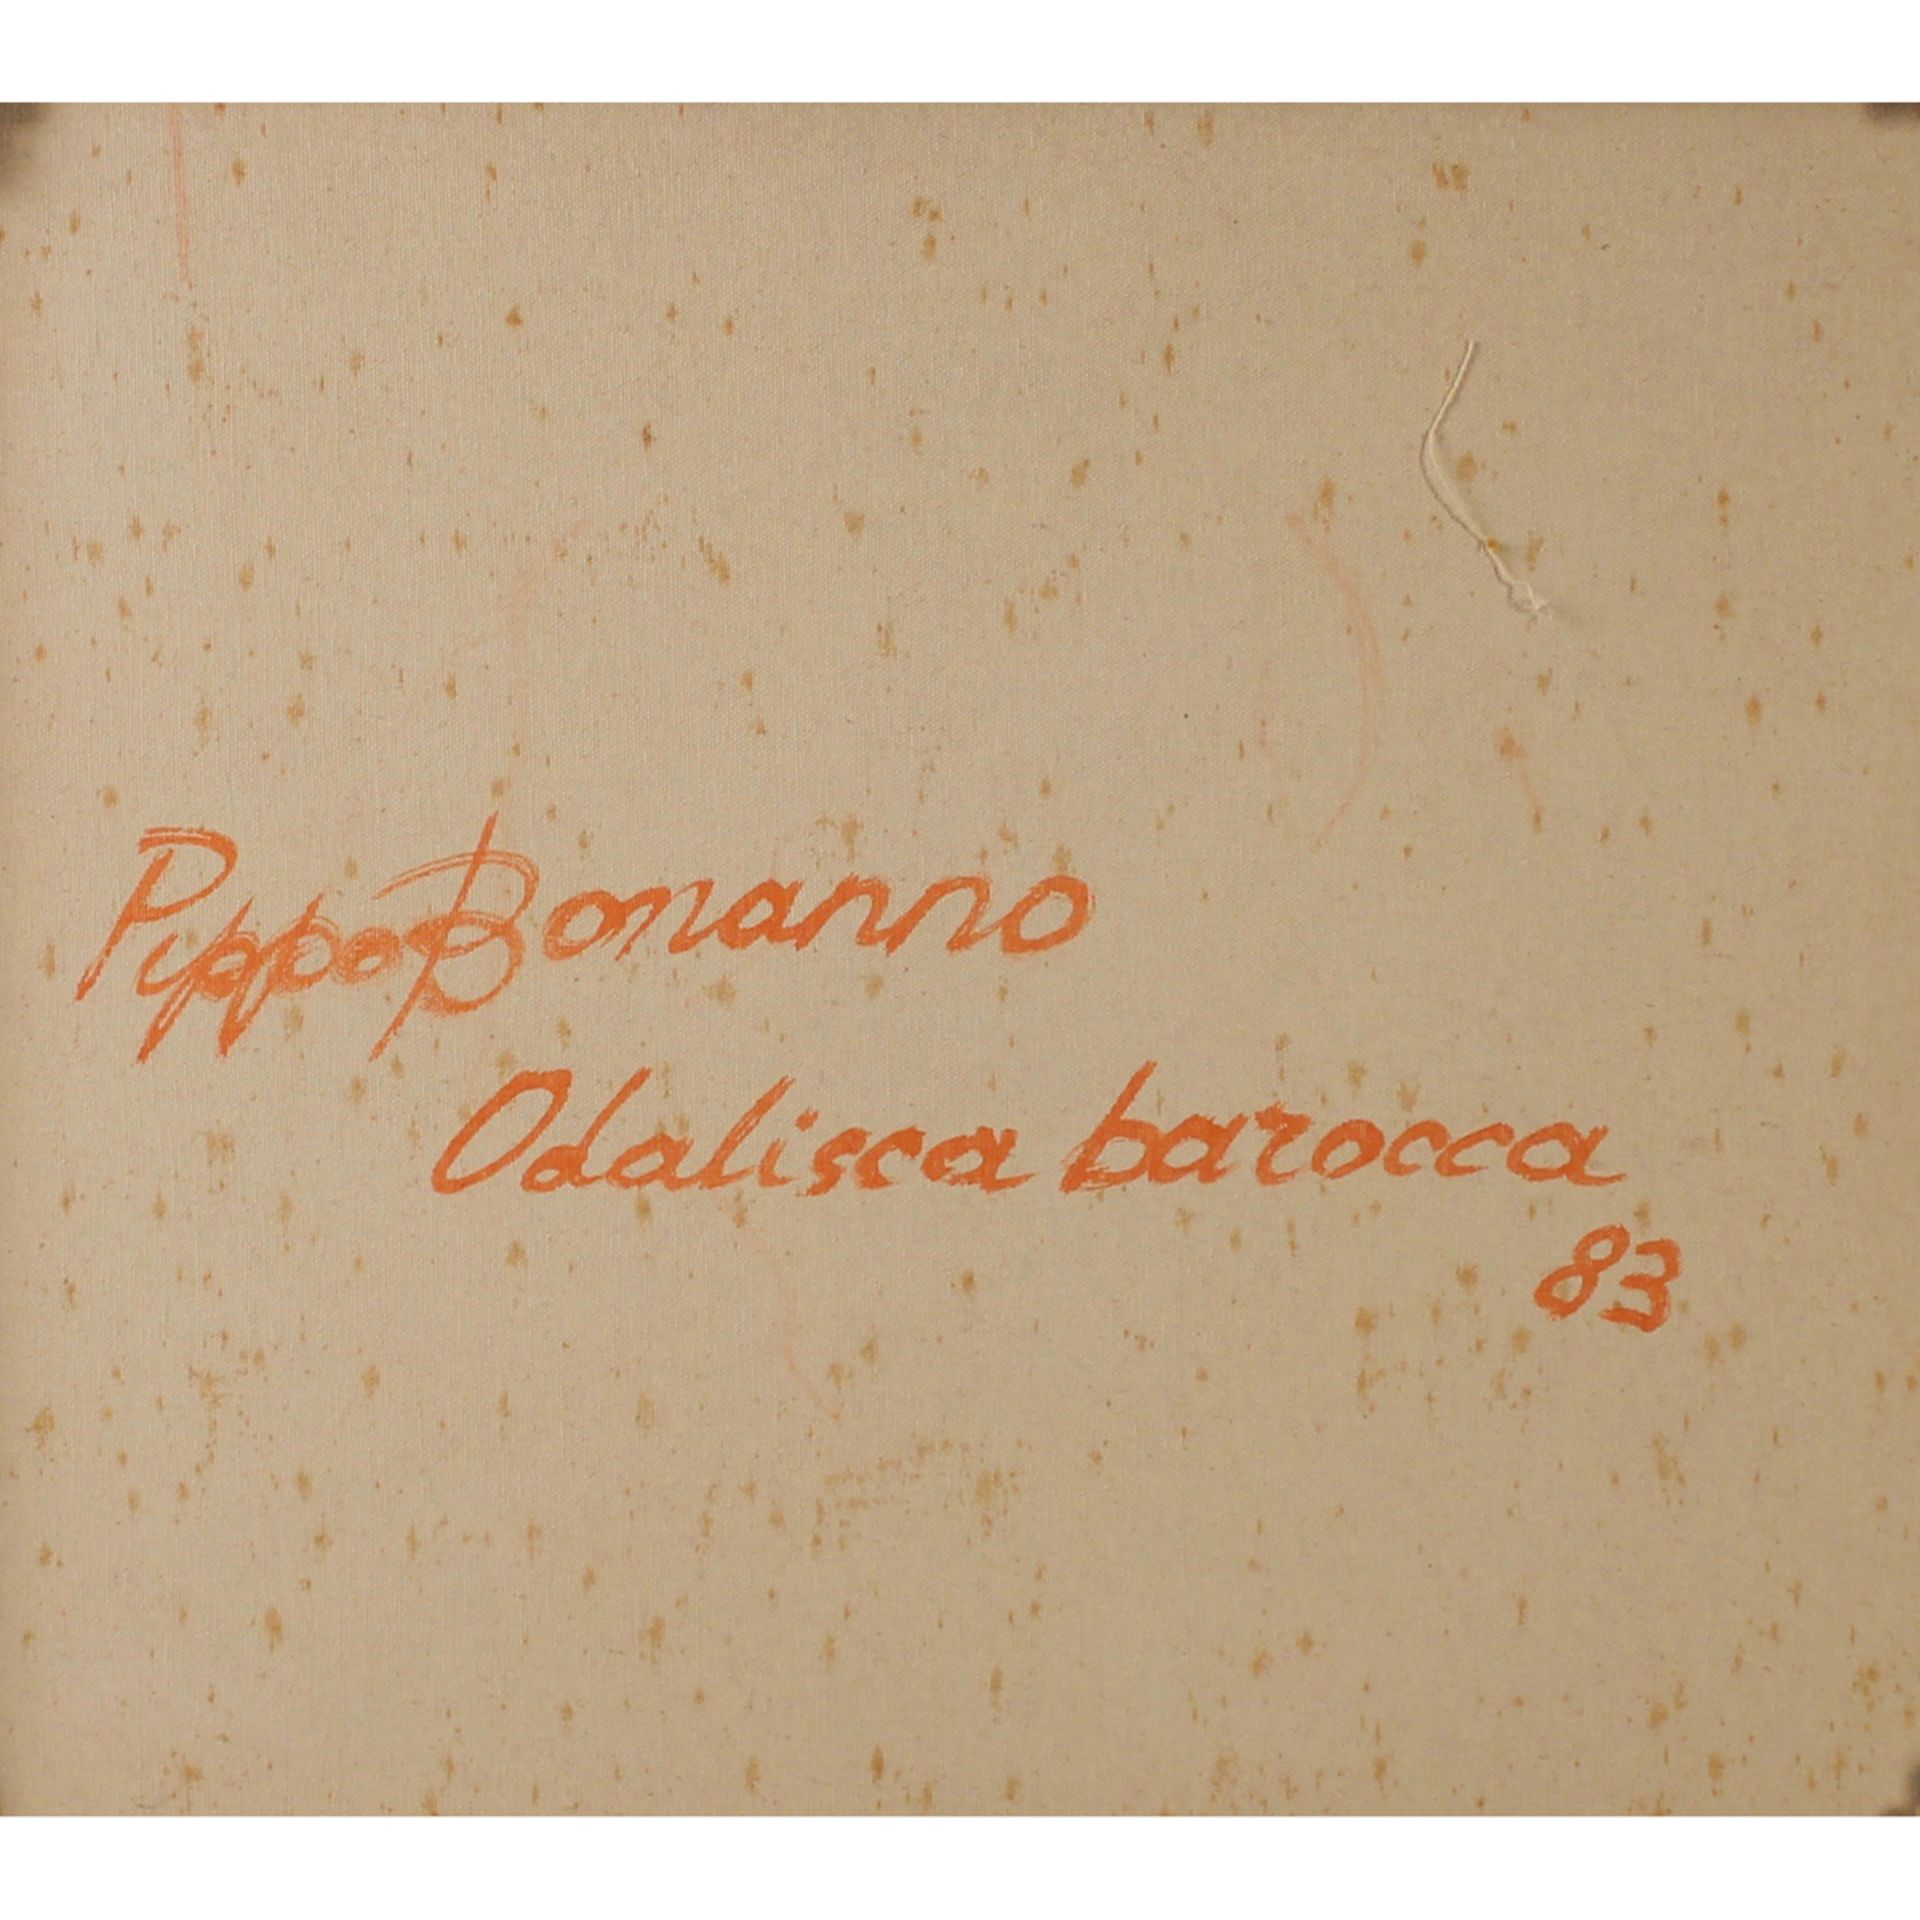 PIPPO BONANNO (1923/2017) “Odalisca barocca"-"Baroque Odalisque" - Image 2 of 2